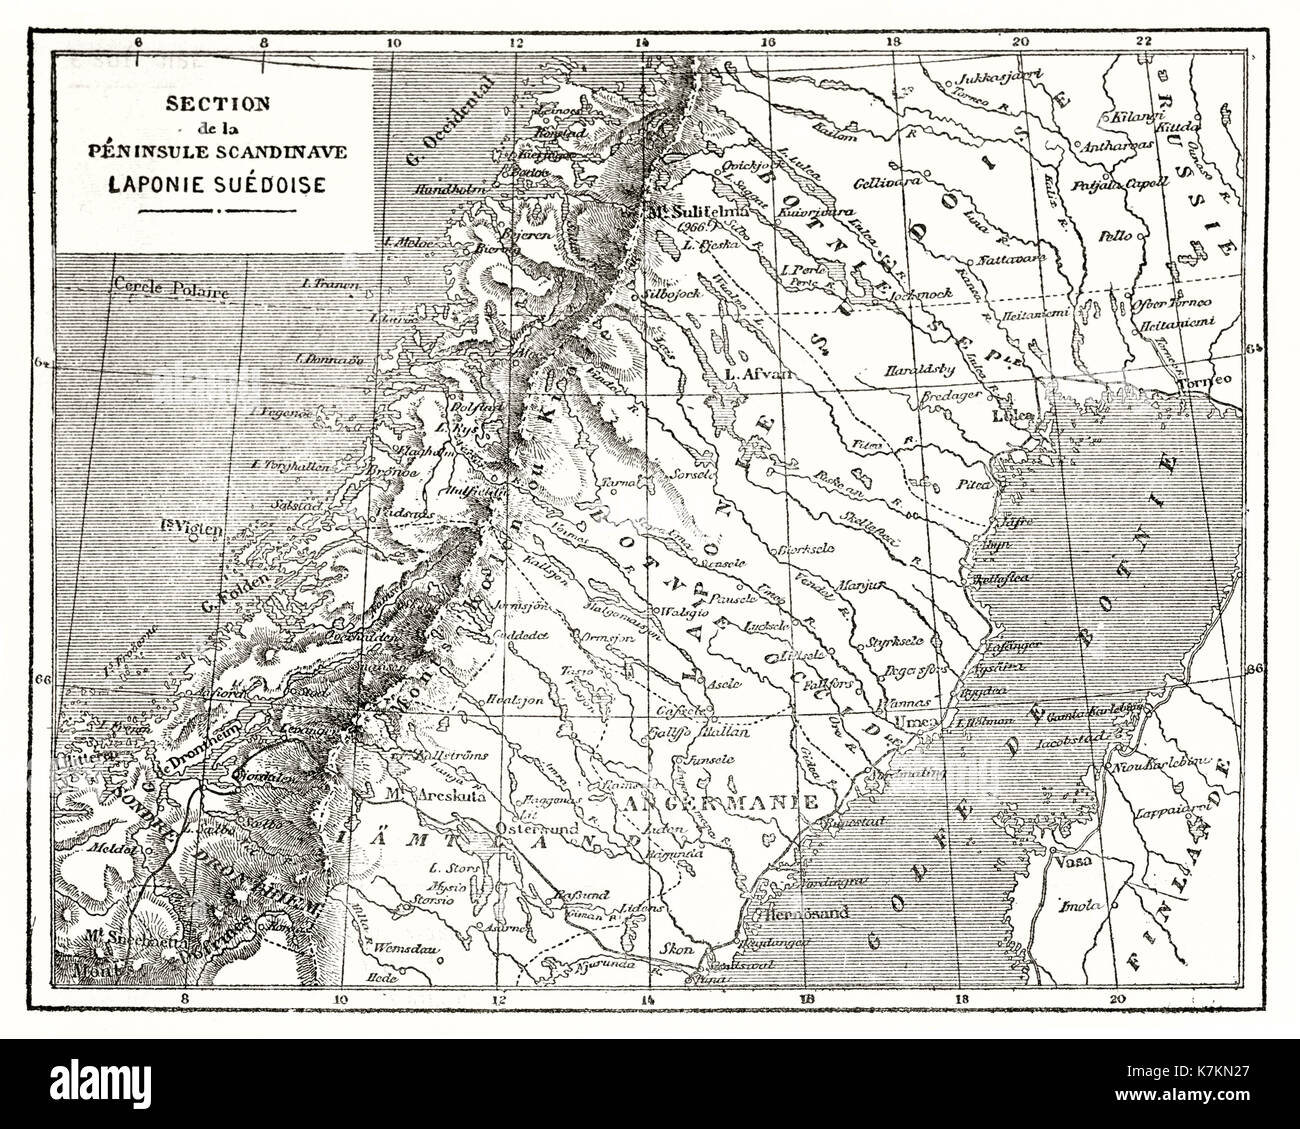 Mappa vecchia della Lapponia svedese. Da autore non identificato, publ. in Le Tour du Monde, Parigi, 1862 Foto Stock